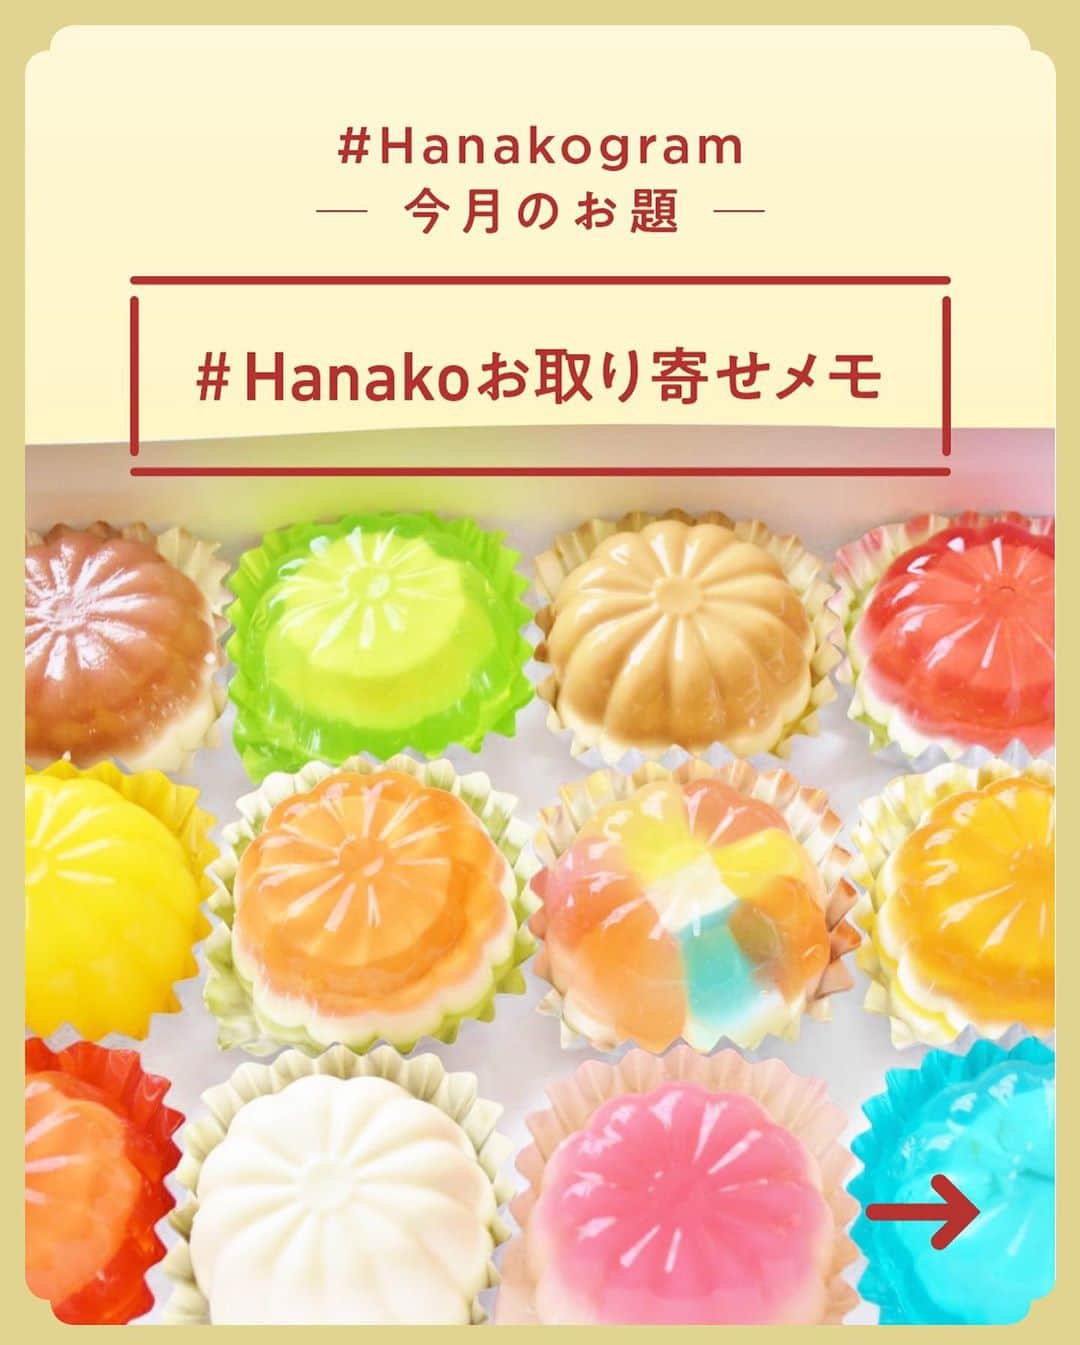 Hanako公式さんのインスタグラム写真 - (Hanako公式Instagram)「#1 Hanakoお取り寄せ図鑑🍳﻿ フードディレクター・野村友里さんがHanakoで連載中の『Good Neighbors,Good Suppliers』。 約6年の連載の中で出会ったお取り寄せ食材をご紹介します。﻿ ﻿ ﻿ 1.〈VOSTOK labo〉の「ふくろうのチーズクリームサンド」﻿ 根室でアトリエを始めて約5年となる〈VOSTOK labo〉。平飼いの卵や放牧で育った牛の生乳で作る有機発酵バターなど、食材は身近なオホーツクのものを使用🥛🦉﻿ ﻿ 2.〈きなうすファーム〉の「たまごかけご飯ギフトセット」﻿ 北海道夕張郡栗山町の〈きなうすファーム〉では、農薬や化学肥料の使用を基準の半分以下に抑えた特別栽培の米を作っています。同じ信条で生産する地元の作り手〈酒井農場〉の卵、〈蝦夷ノ富士醸造〉の醤油🍚﻿ ﻿ 3.〈チーズ工房チカプ〉の「チーズ」﻿ 菊地亮太さん・芙美子さん夫妻は、姉夫婦が営む〈横峯牧場〉の牛乳を使い、牧場内の工房でチーズを作っています。夏はさっぱりと牧草の風味で、冬は濃いミルキーな味わい🧀﻿ ﻿ 4.〈ファットリアビオ北海道〉の「カチョカヴァロ」﻿ 南イタリア出身のチーズ職人が北海道の牛乳を使い、伝統の製法と機械で作る品。イタリアチーズの魅力を日本の素材で表現。「カチョカヴァロ」は、厚さ1～2㎝の輪切りにし、熱したフライパンで油をひかずに焼いて“ステーキ”に🐄﻿ ﻿ 5.〈折笠農場〉の「きな粉」﻿ 「無肥料自然栽培でおいしいものができるように」と5代目・折笠健（ますらお）さんは土地に合った品種を研究。オーガニック栽培は土の力を取り戻すことにもつながっている野田とか。原料豆の「黒千石」は栄養価が高く、アントシアニンが豊富🌿﻿ ﻿ ﻿ 6.〈Beverly Natural〉の「美波里のたまご」﻿ 根室の森の中を自由に歩き回り、国産オーガニック小麦を主食に、魚や昆布をベースにした餌を食べて暮らす、ストレスフリーの鶏から生まれた卵は加熱してもふっくら。栄養価が高いとされる初産卵の販売も🥚﻿ ﻿ 7.〈ワインショップフジヰ〉の「花かつお」﻿ 北海道を代表するワインショップが、ある日出合った乾物屋の鰹節に魅せられて販売を始めた「花かつお」は、知る人ぞ知る名物に。少し厚めに削り、パリパリとした食感。料理はもちろん、ふりかけにするのもおすすめ🐟﻿ ﻿ 8.〈しあわせチーズ工房〉のチーズ「幸」﻿ 5月から11月の放牧期に採れた生乳の風味が生きる、ハードタイプの長期熟成チーズ。はちみつやキャラメルを思わせる豊かな風味は、薄くスライスしてじっくり味わいたい🍯﻿ ﻿ 9.〈ANAN coffee〉の「コーヒー豆」﻿ 2019年7月に鳥取県大山から北海道・洞爺湖に拠点を移した。コーヒーの焙煎からドリップまで行っている谷本空南（あなん）さんは弱冠18歳。1回に500gだけを七輪で焼き、産地や焙煎の具合などもさまざまに挑戦☕️﻿ ﻿ 10.〈SKURO〉の「コシヒカリ」﻿ 米農家に生まれた塚本美樹さんが、アンティークショップを営むかたわら受け継いで育てているコシヒカリ。小規模農家だからこそ叶う、行き届いた栽培と適切な刈り入れで高い品質を誇っています🍙﻿ ﻿ 11.〈清水牧場チーズ工房〉の「チーズ」﻿ 標高1,400～1,800mの北アルプスの山奥に、牛と羊を放牧する広大な牧場とチーズ工房が。チーズ作りに最高の環境🐮﻿ ﻿ 12.〈大久保醸造店〉の「甘露醤油」﻿ 「甘露醤油」は、1年醸造の醤油に醤油麹と米麹を加え再仕込みをし、3年間熟成。麹を作る微生物の環境を整え、じっくりと造った醤油は、全国の料理人から支持を集める。熟成醤油ならではの深いコクと香りは、お刺身などに最適。﻿ ﻿ 13.〈白ほたる豆腐店〉の「がんもどき」﻿ 7年前にサラリーマンから豆腐屋に転身した森友実さん。夫は大豆の自家栽培を始めた。「身も心も元気になれるものを」と、がんもどきには食感や風味の良いレンコン、黒ごま、ひじき、シイタケなどを木綿豆腐と合わせています🌾﻿ ﻿ 14.〈飯田屋飴店〉の「あめせんべい」﻿ 空気を含ませながら手作業で練り、2人がかりでのばして上品な飴に。黒糖とサトウキビ由来の粗糖でミネラル豊富に仕上げています。懐かしくて優しい甘さは、江戸時代から続く店の味。パリパリ割りながら食べる楽しさも🍘﻿ ﻿ ﻿ ﻿ _______________________________________﻿ ﻿ ＼ #Hanakogram 投稿募集中！／﻿ 今月のお題は 「#Hanakoお取り寄せメモ 」﻿ 期間は2020/7/10〜2020/8/09。﻿ ﻿ _______________________________________﻿ ﻿ Hanako1186号_2020年の今こそ取り寄せたいもの発売！】﻿ #Hanako #Hanako_magazine #stayhome #おうち時間 #おこもり #ポジティブおこもり #日々の暮らしを楽しむ #丁寧な暮らし #おうちカフェ #コーヒーのある暮らし #おやつの時間 #おうちごはん #部屋作り #シンプルな暮らし #お取り寄せ #お取り寄せグルメ #常備菜」7月22日 20時14分 - hanako_magazine